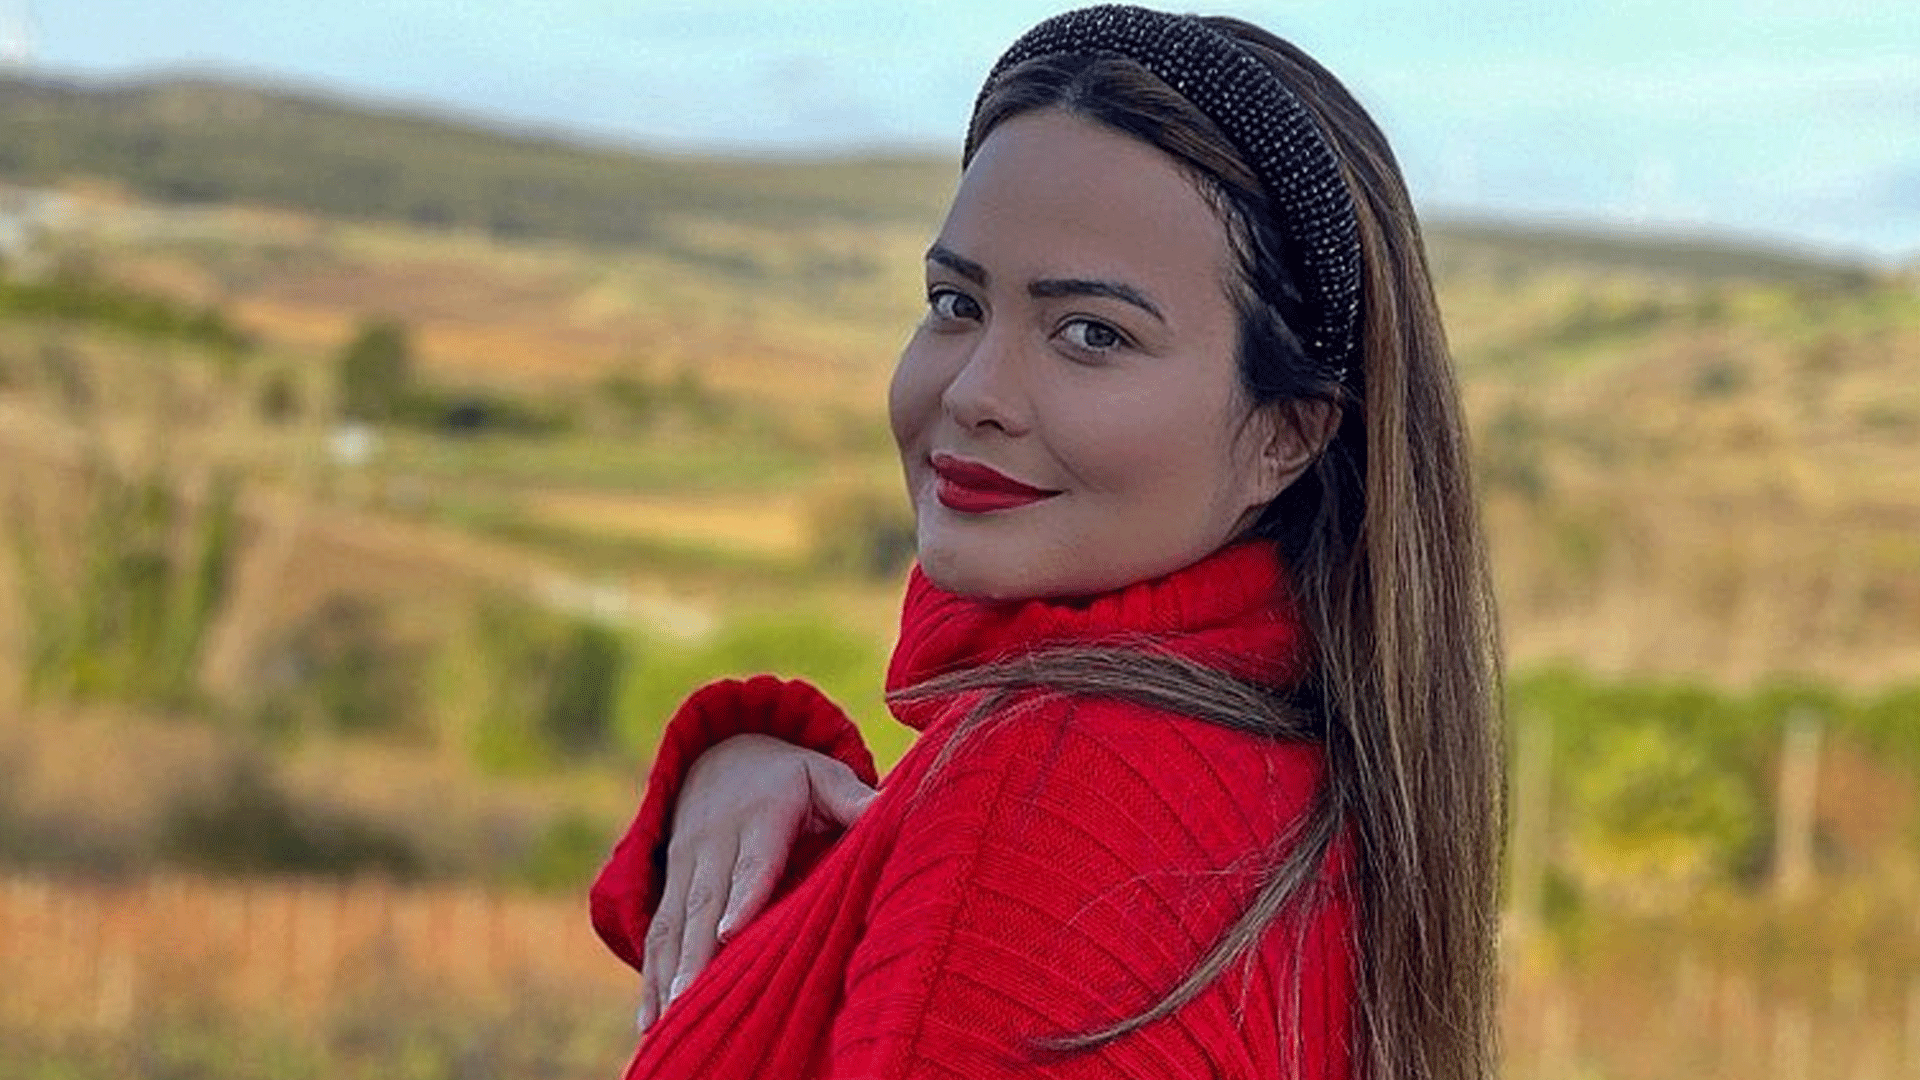 Em Portugal, Geisy Arruda exibe look do dia e encanta seguidores: “Elegante hoje” - Metropolitana FM